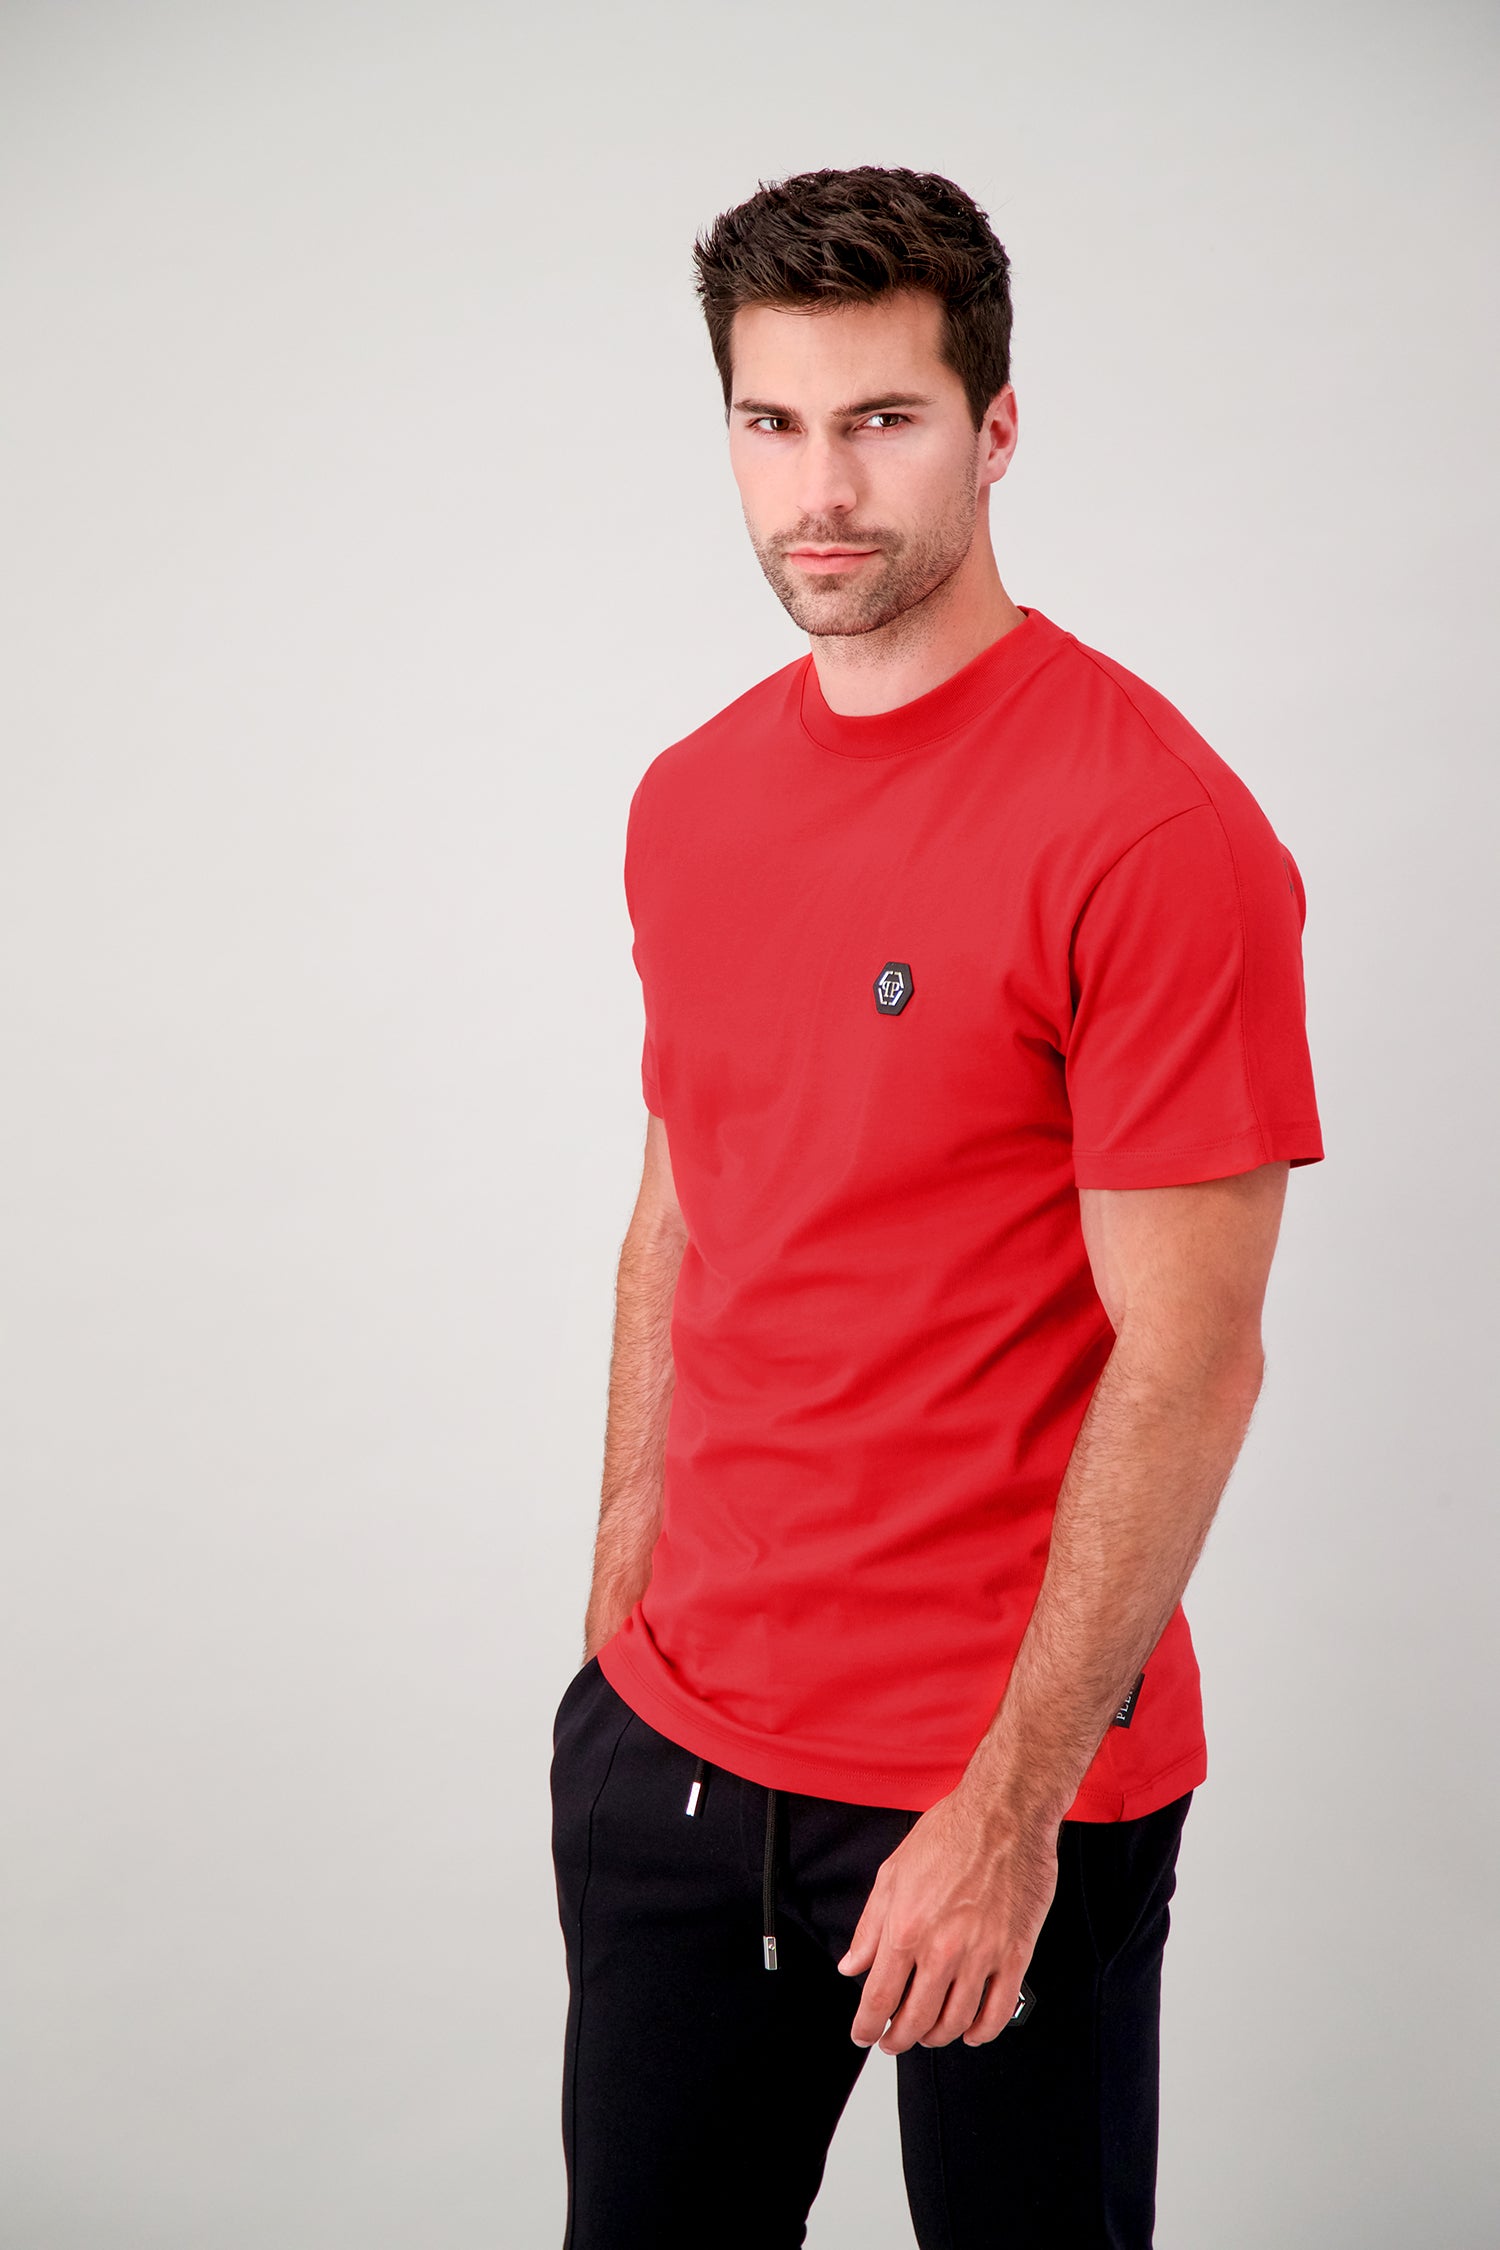 Philipp Plein Red Round Neck SS PP 1978 T-Shirt